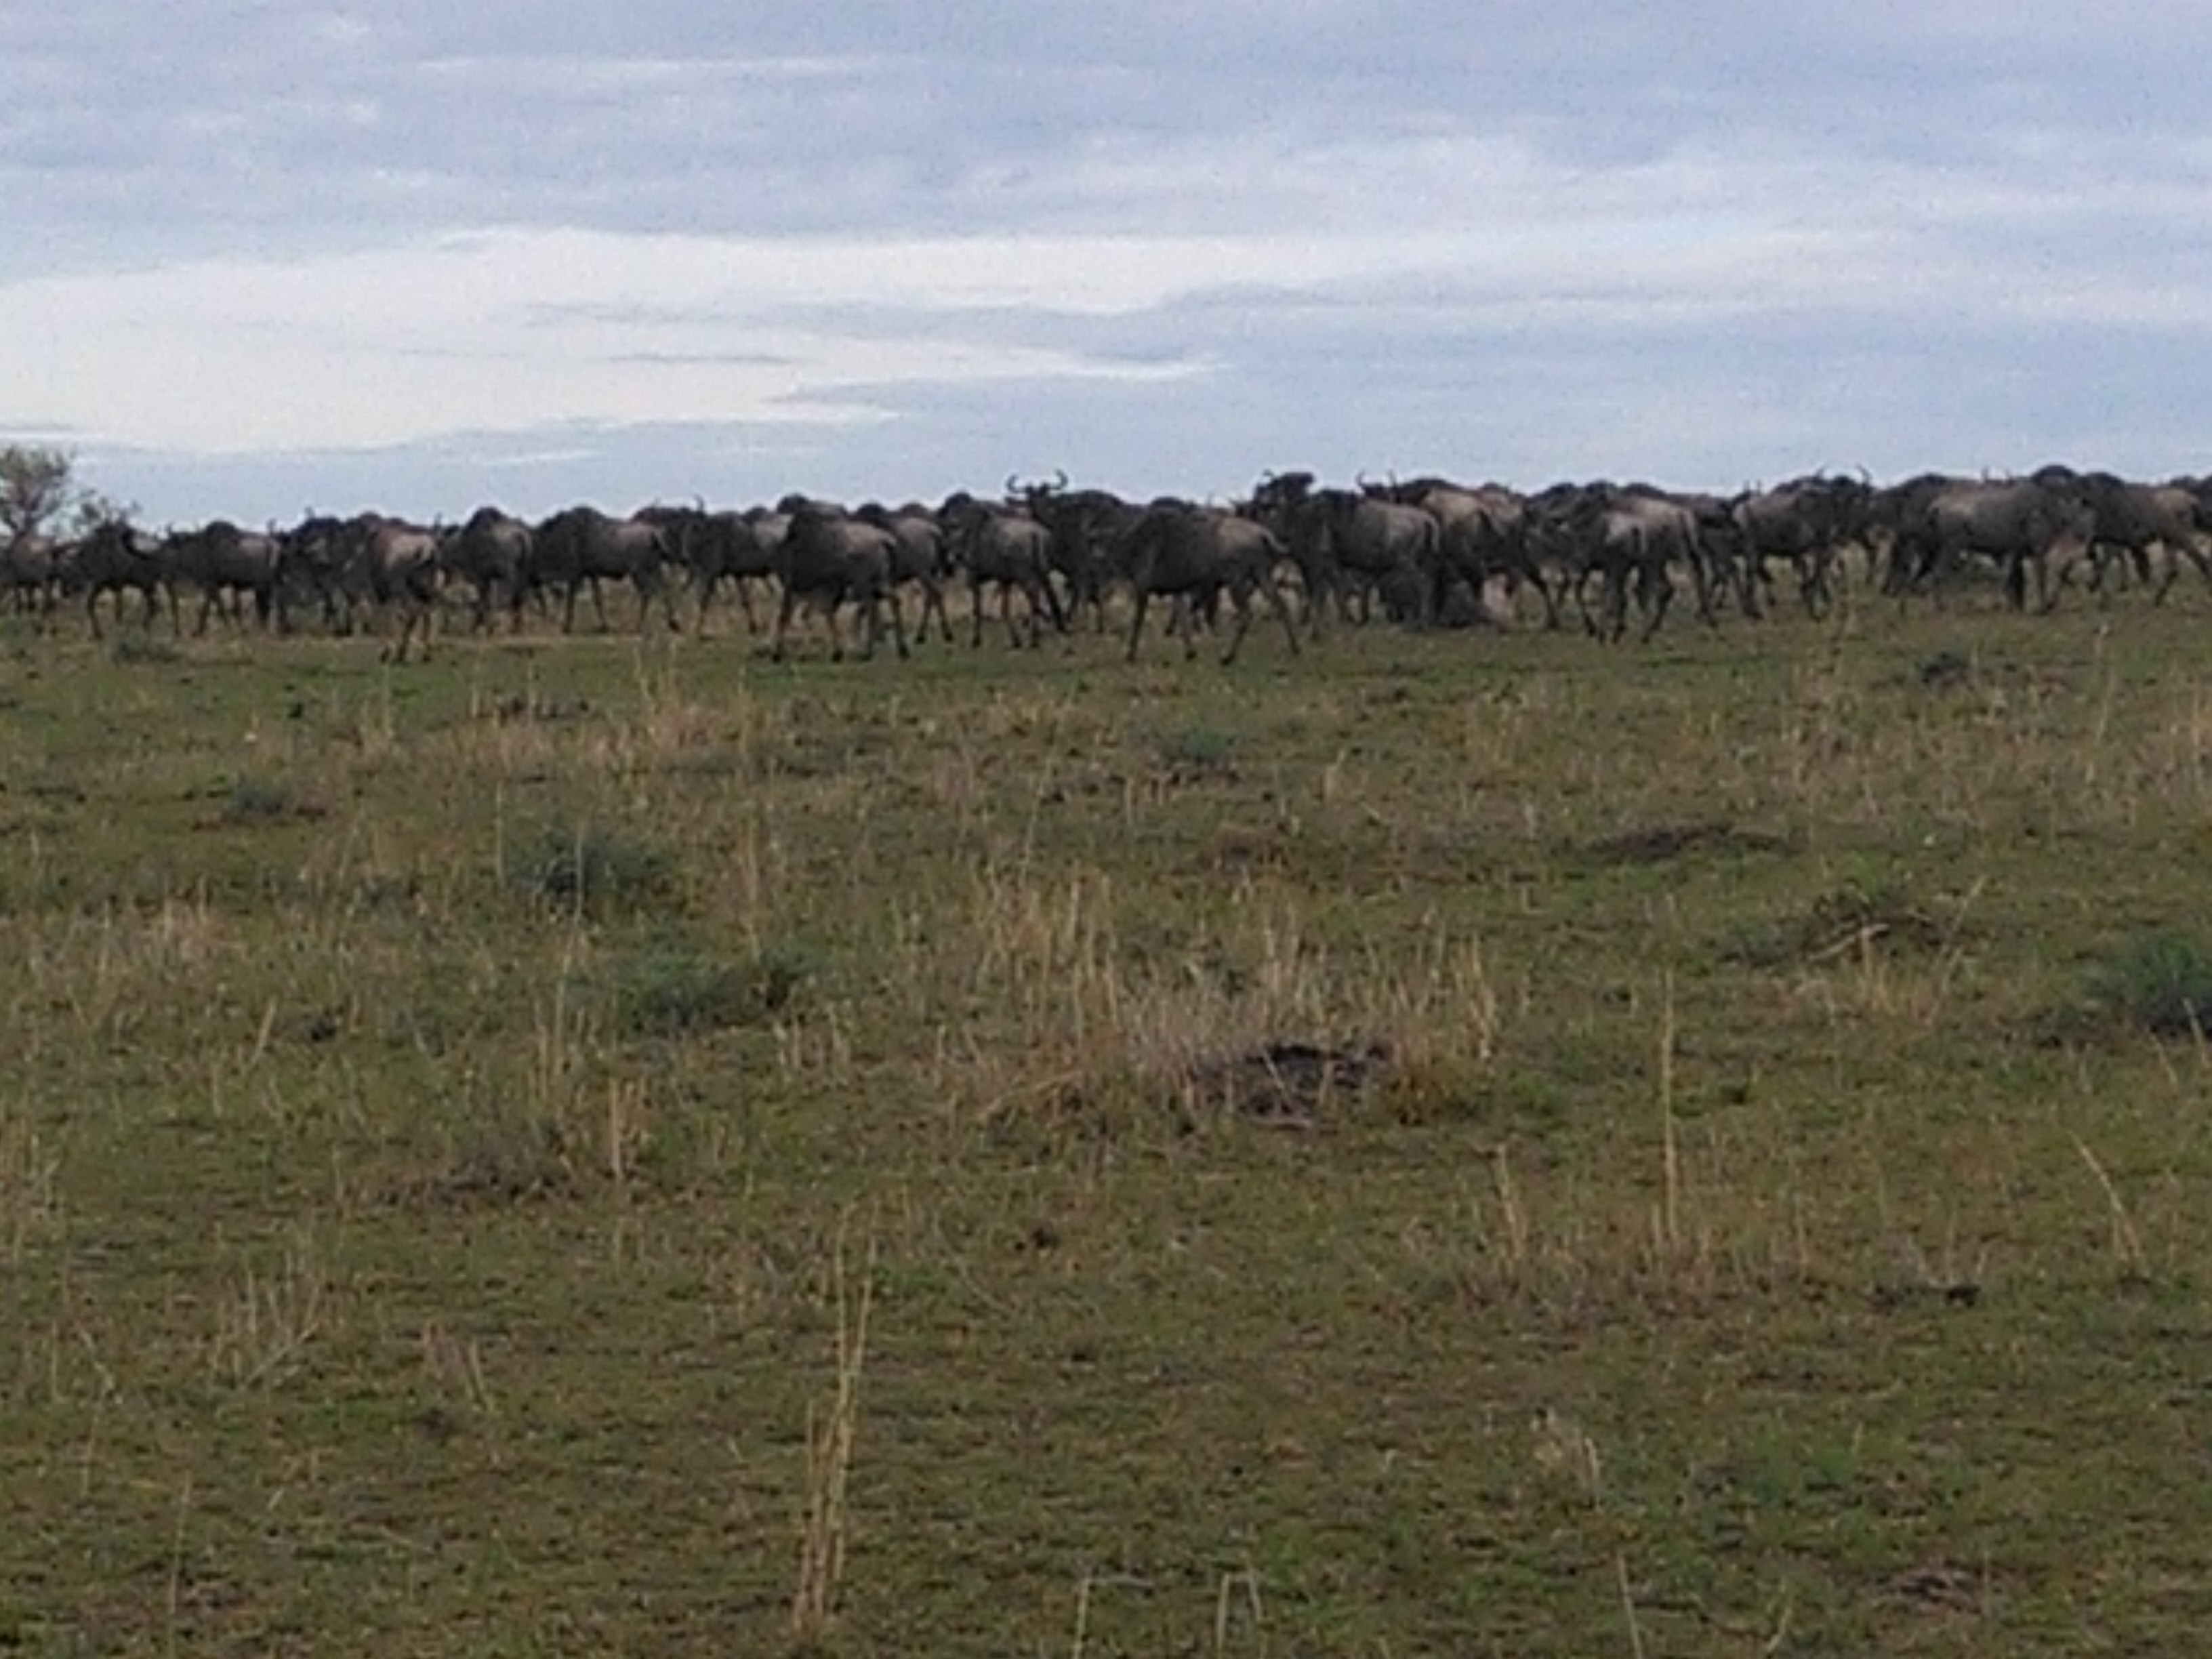 Wildebeest Migration Safari Bookings, YHA Kenya Travel , Masai Mara Tour Package.